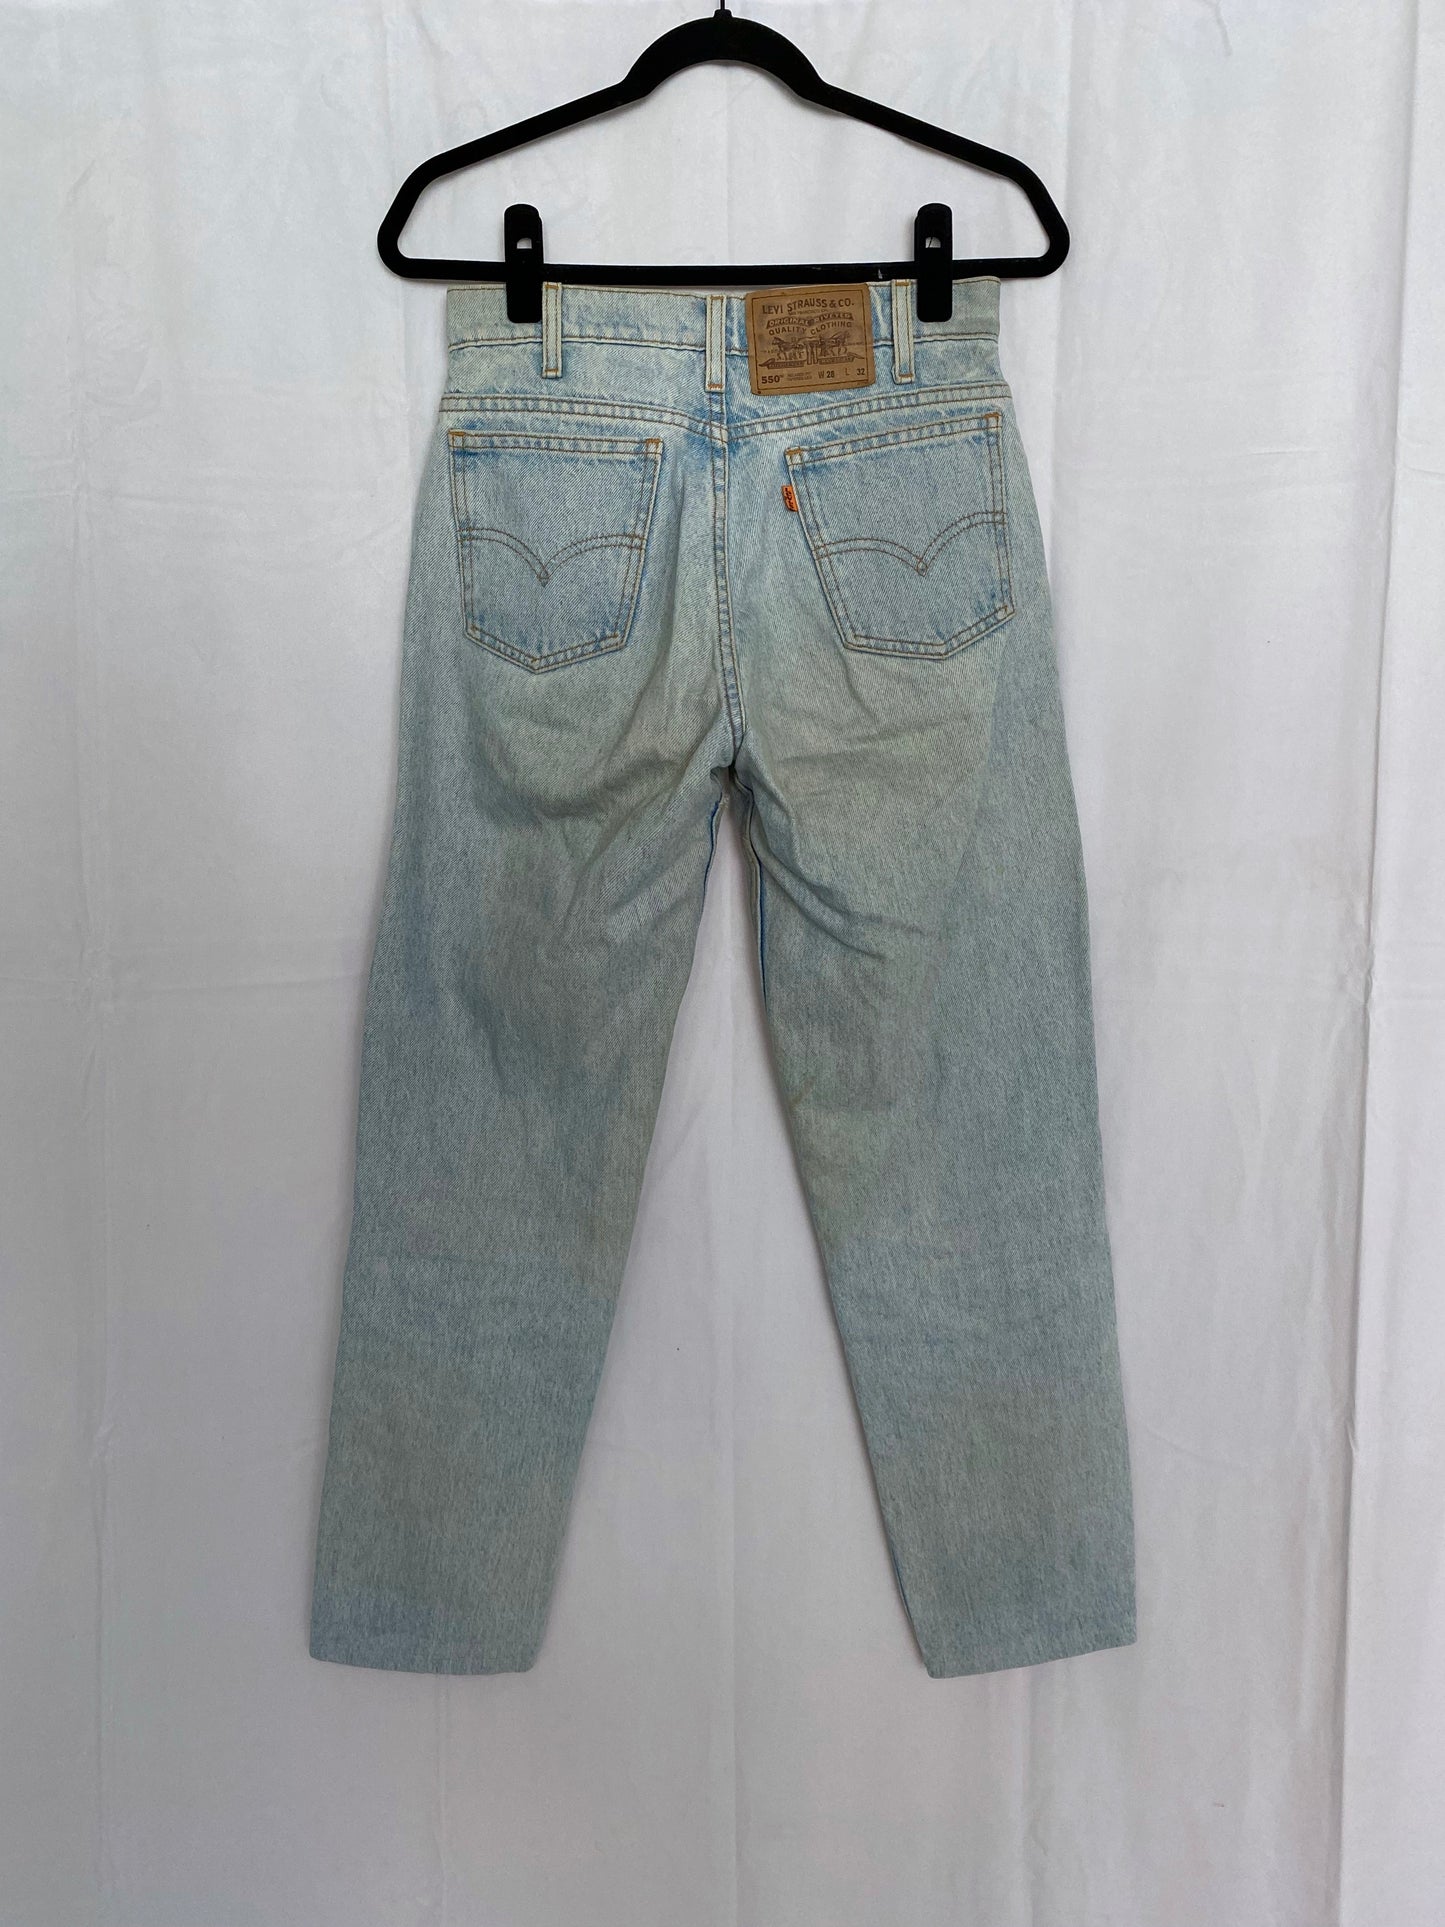 Vintage 90s Levi's 550 Jeans